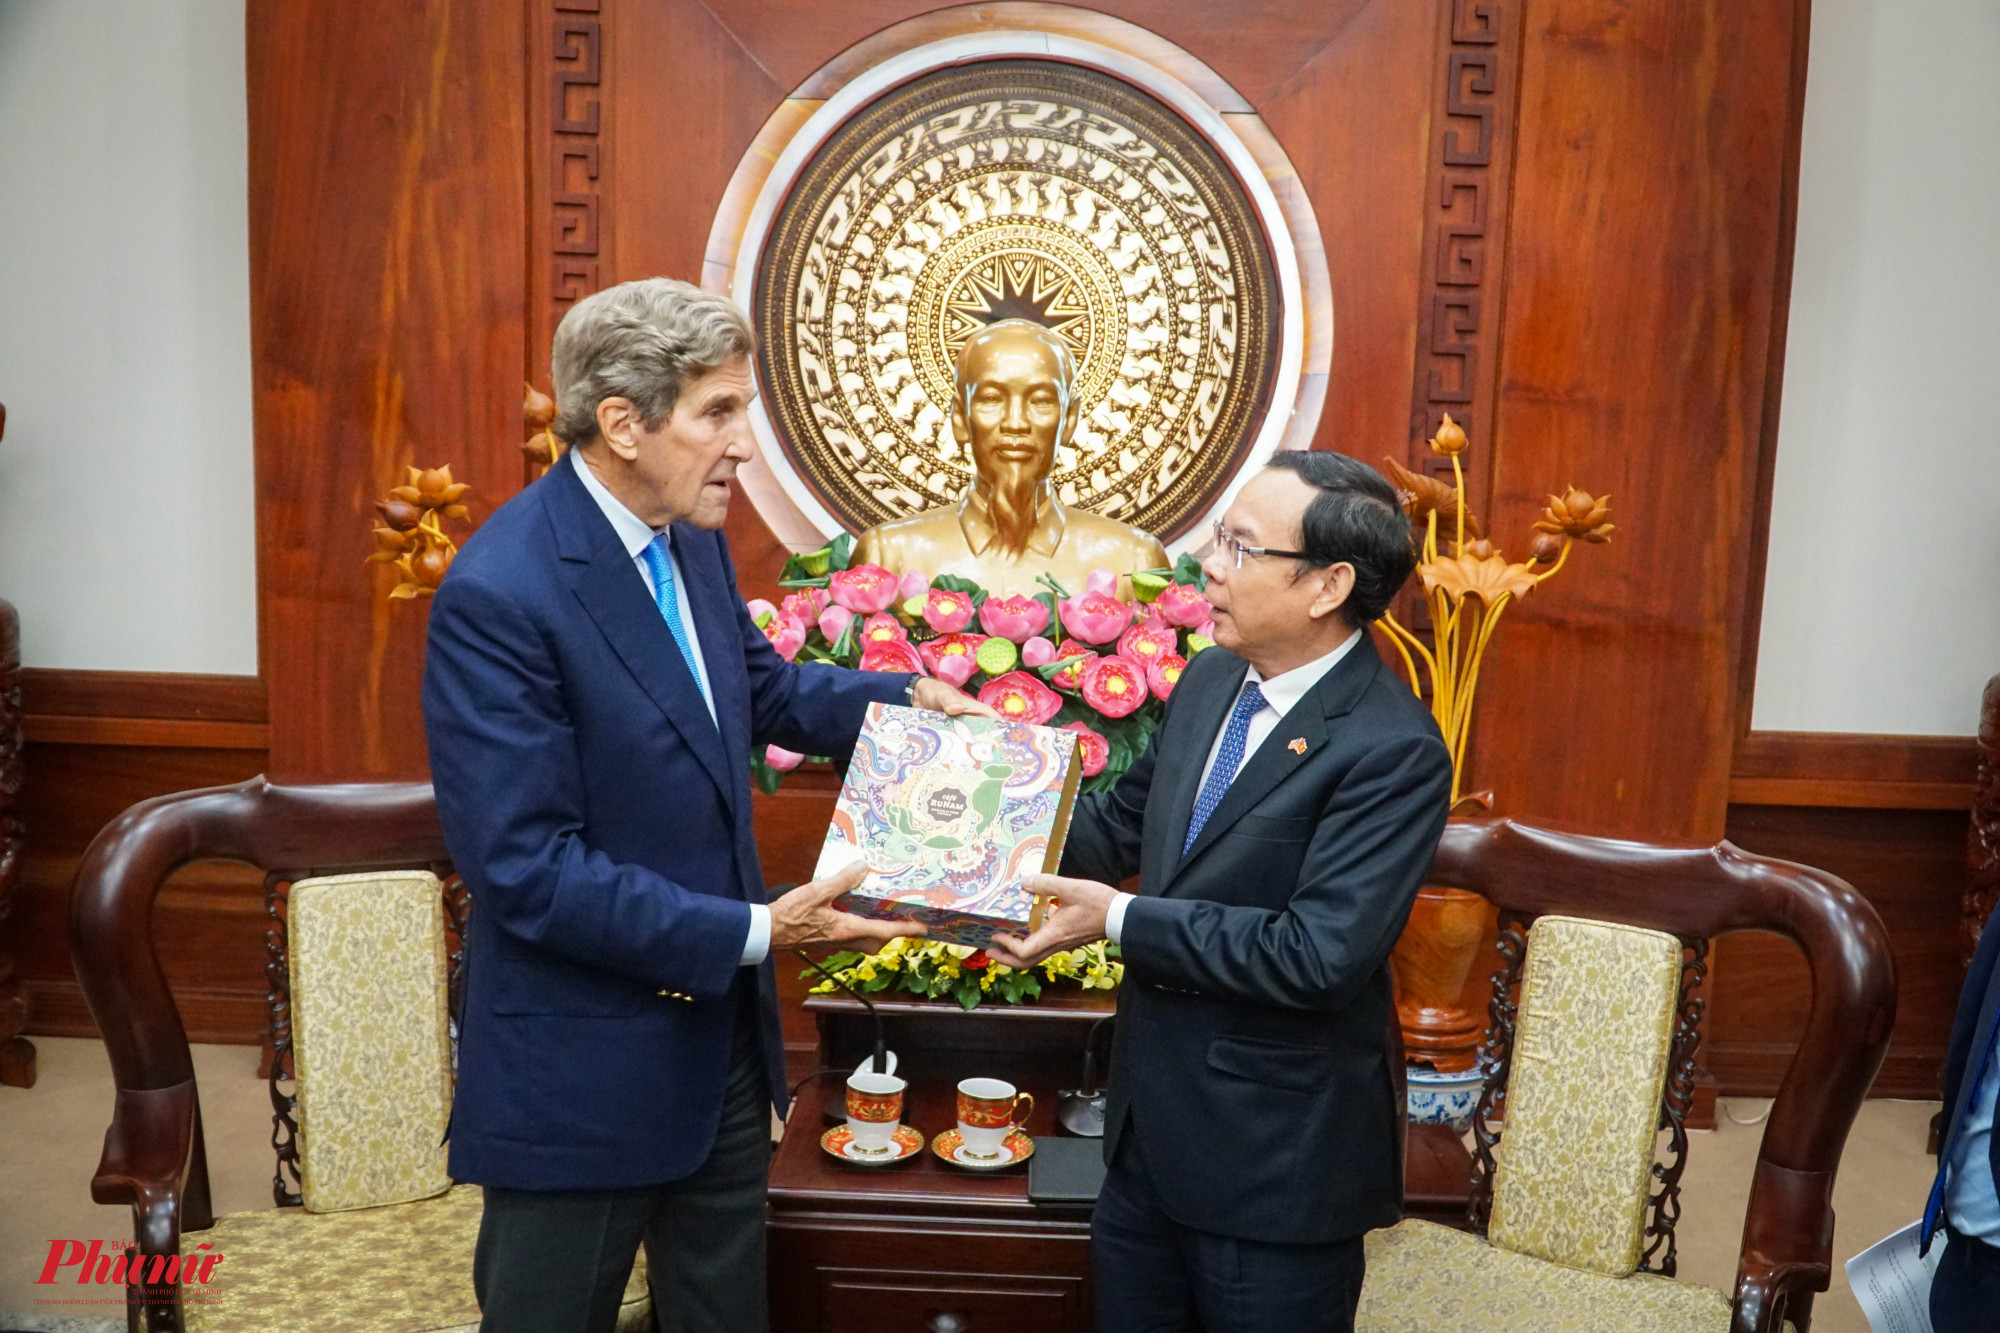 Bí thư Thành Ủy Nguyễn Văn Nên trò chuyện cùng đặc phái viên John Kerry về vấn đề biến đổi khí hậu và cách ứng phó